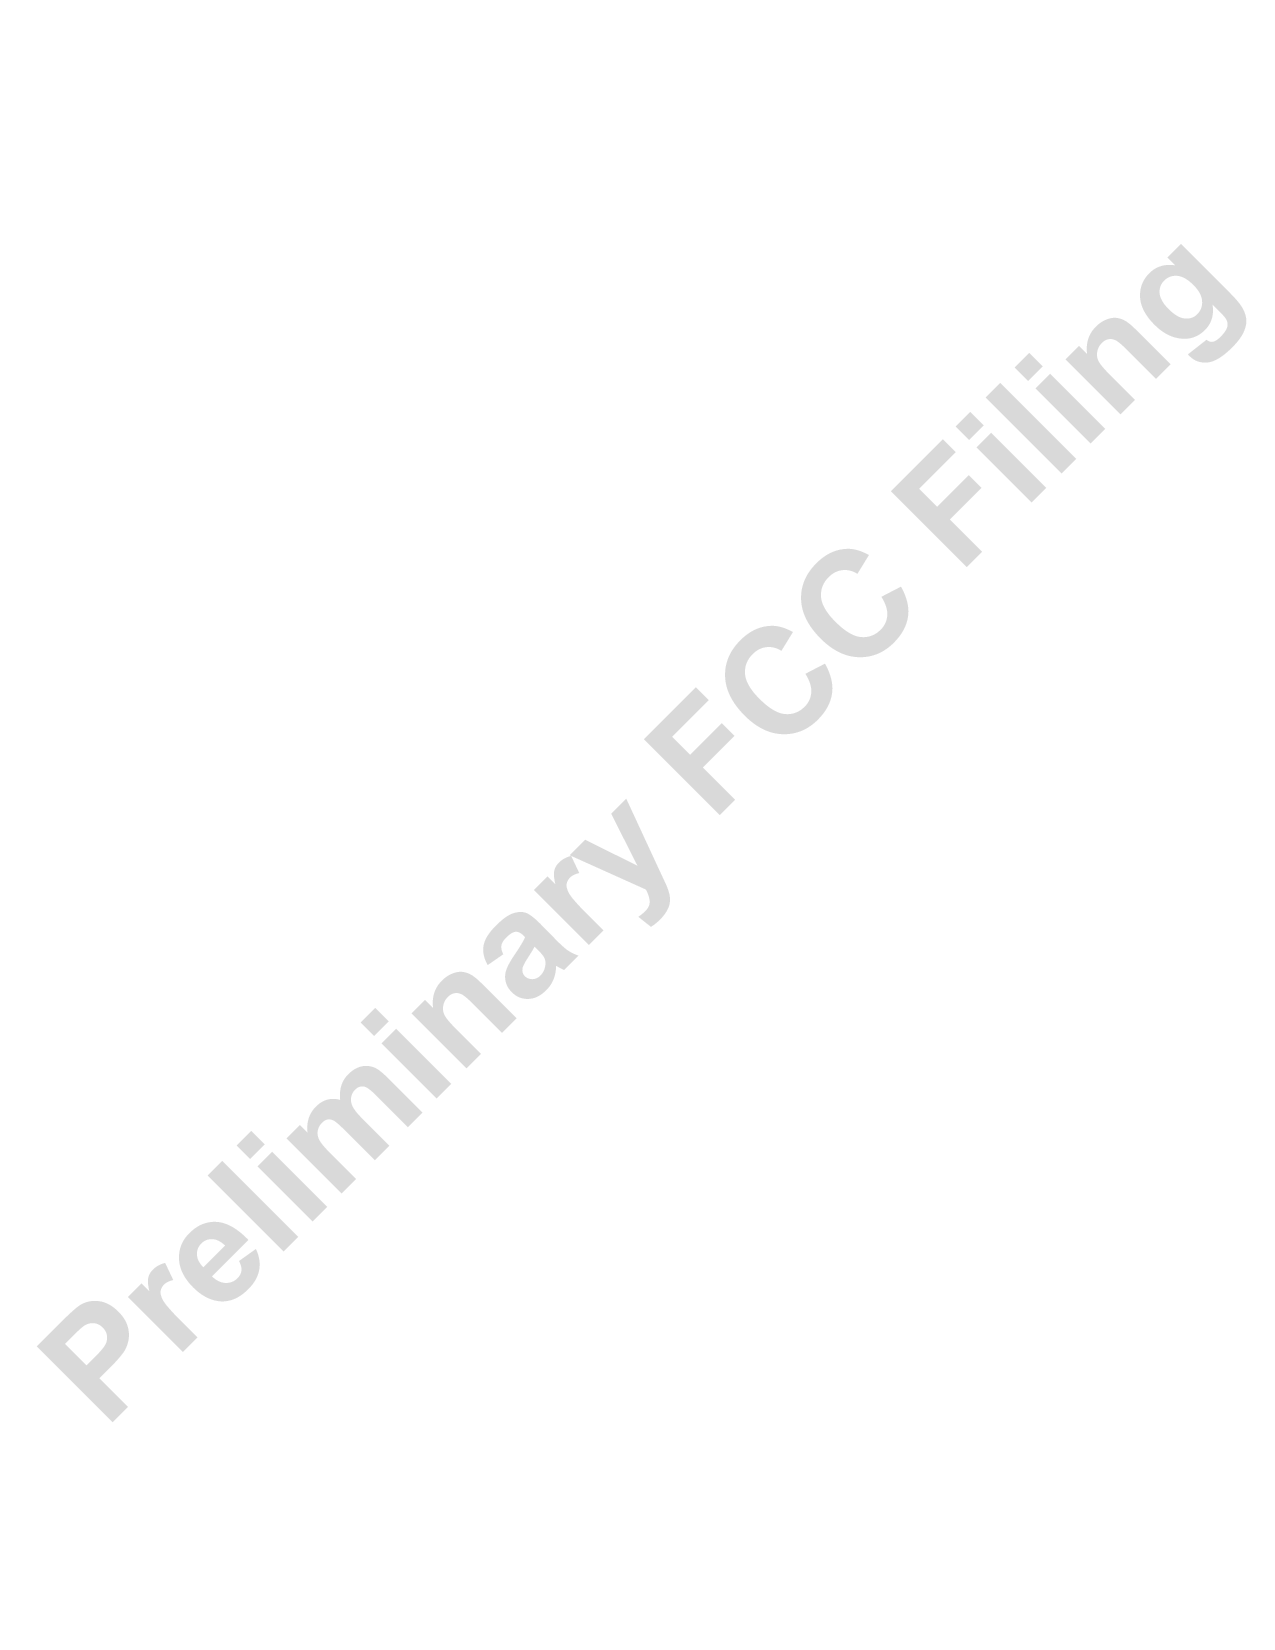 Preliminary FCC Filing